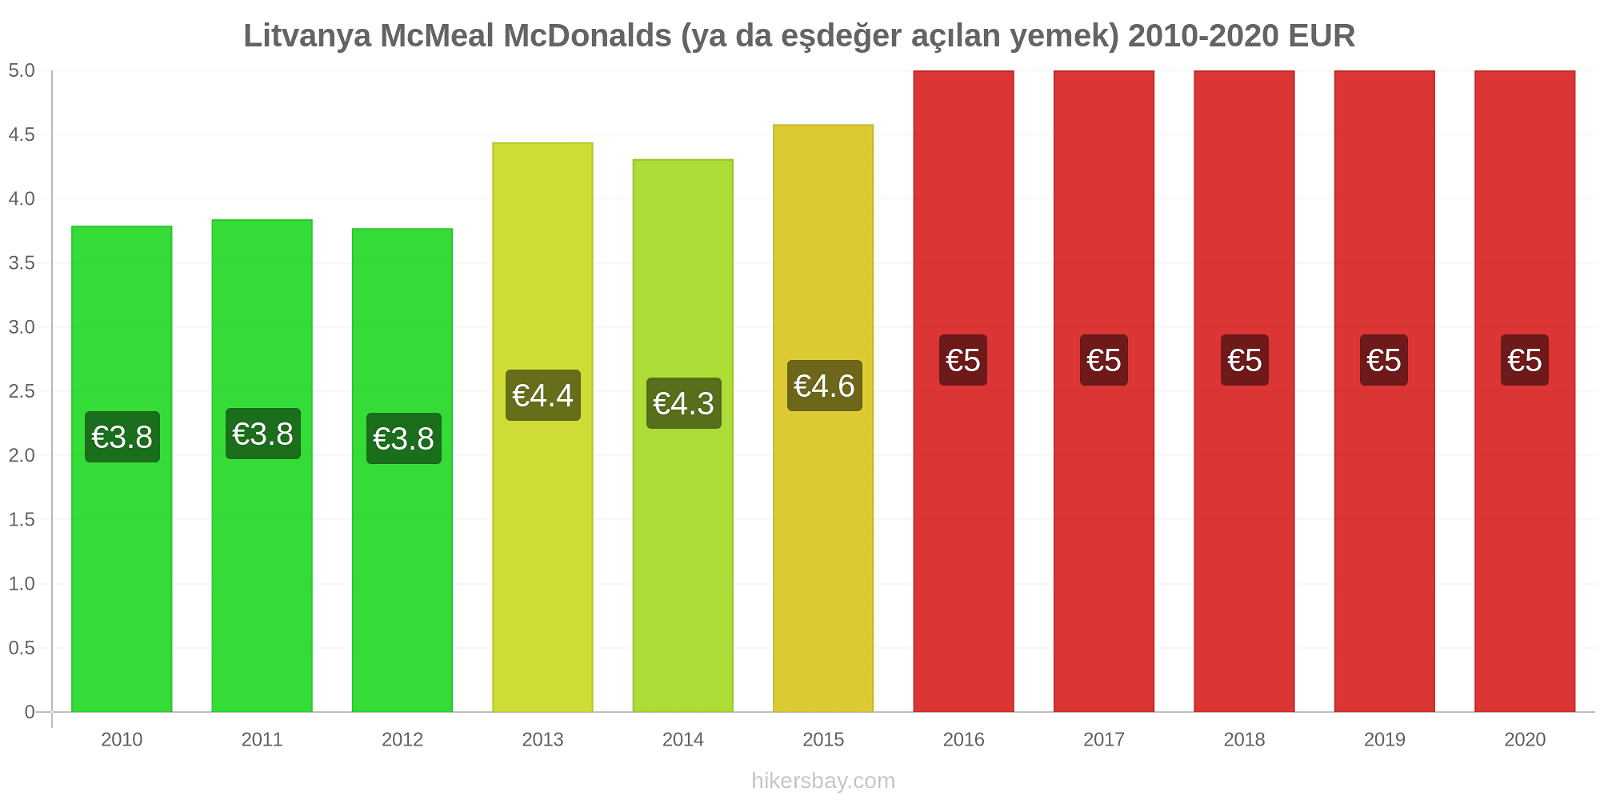 Litvanya fiyat değişiklikleri McMeal McDonalds (ya da eşdeğer açılan yemek) hikersbay.com